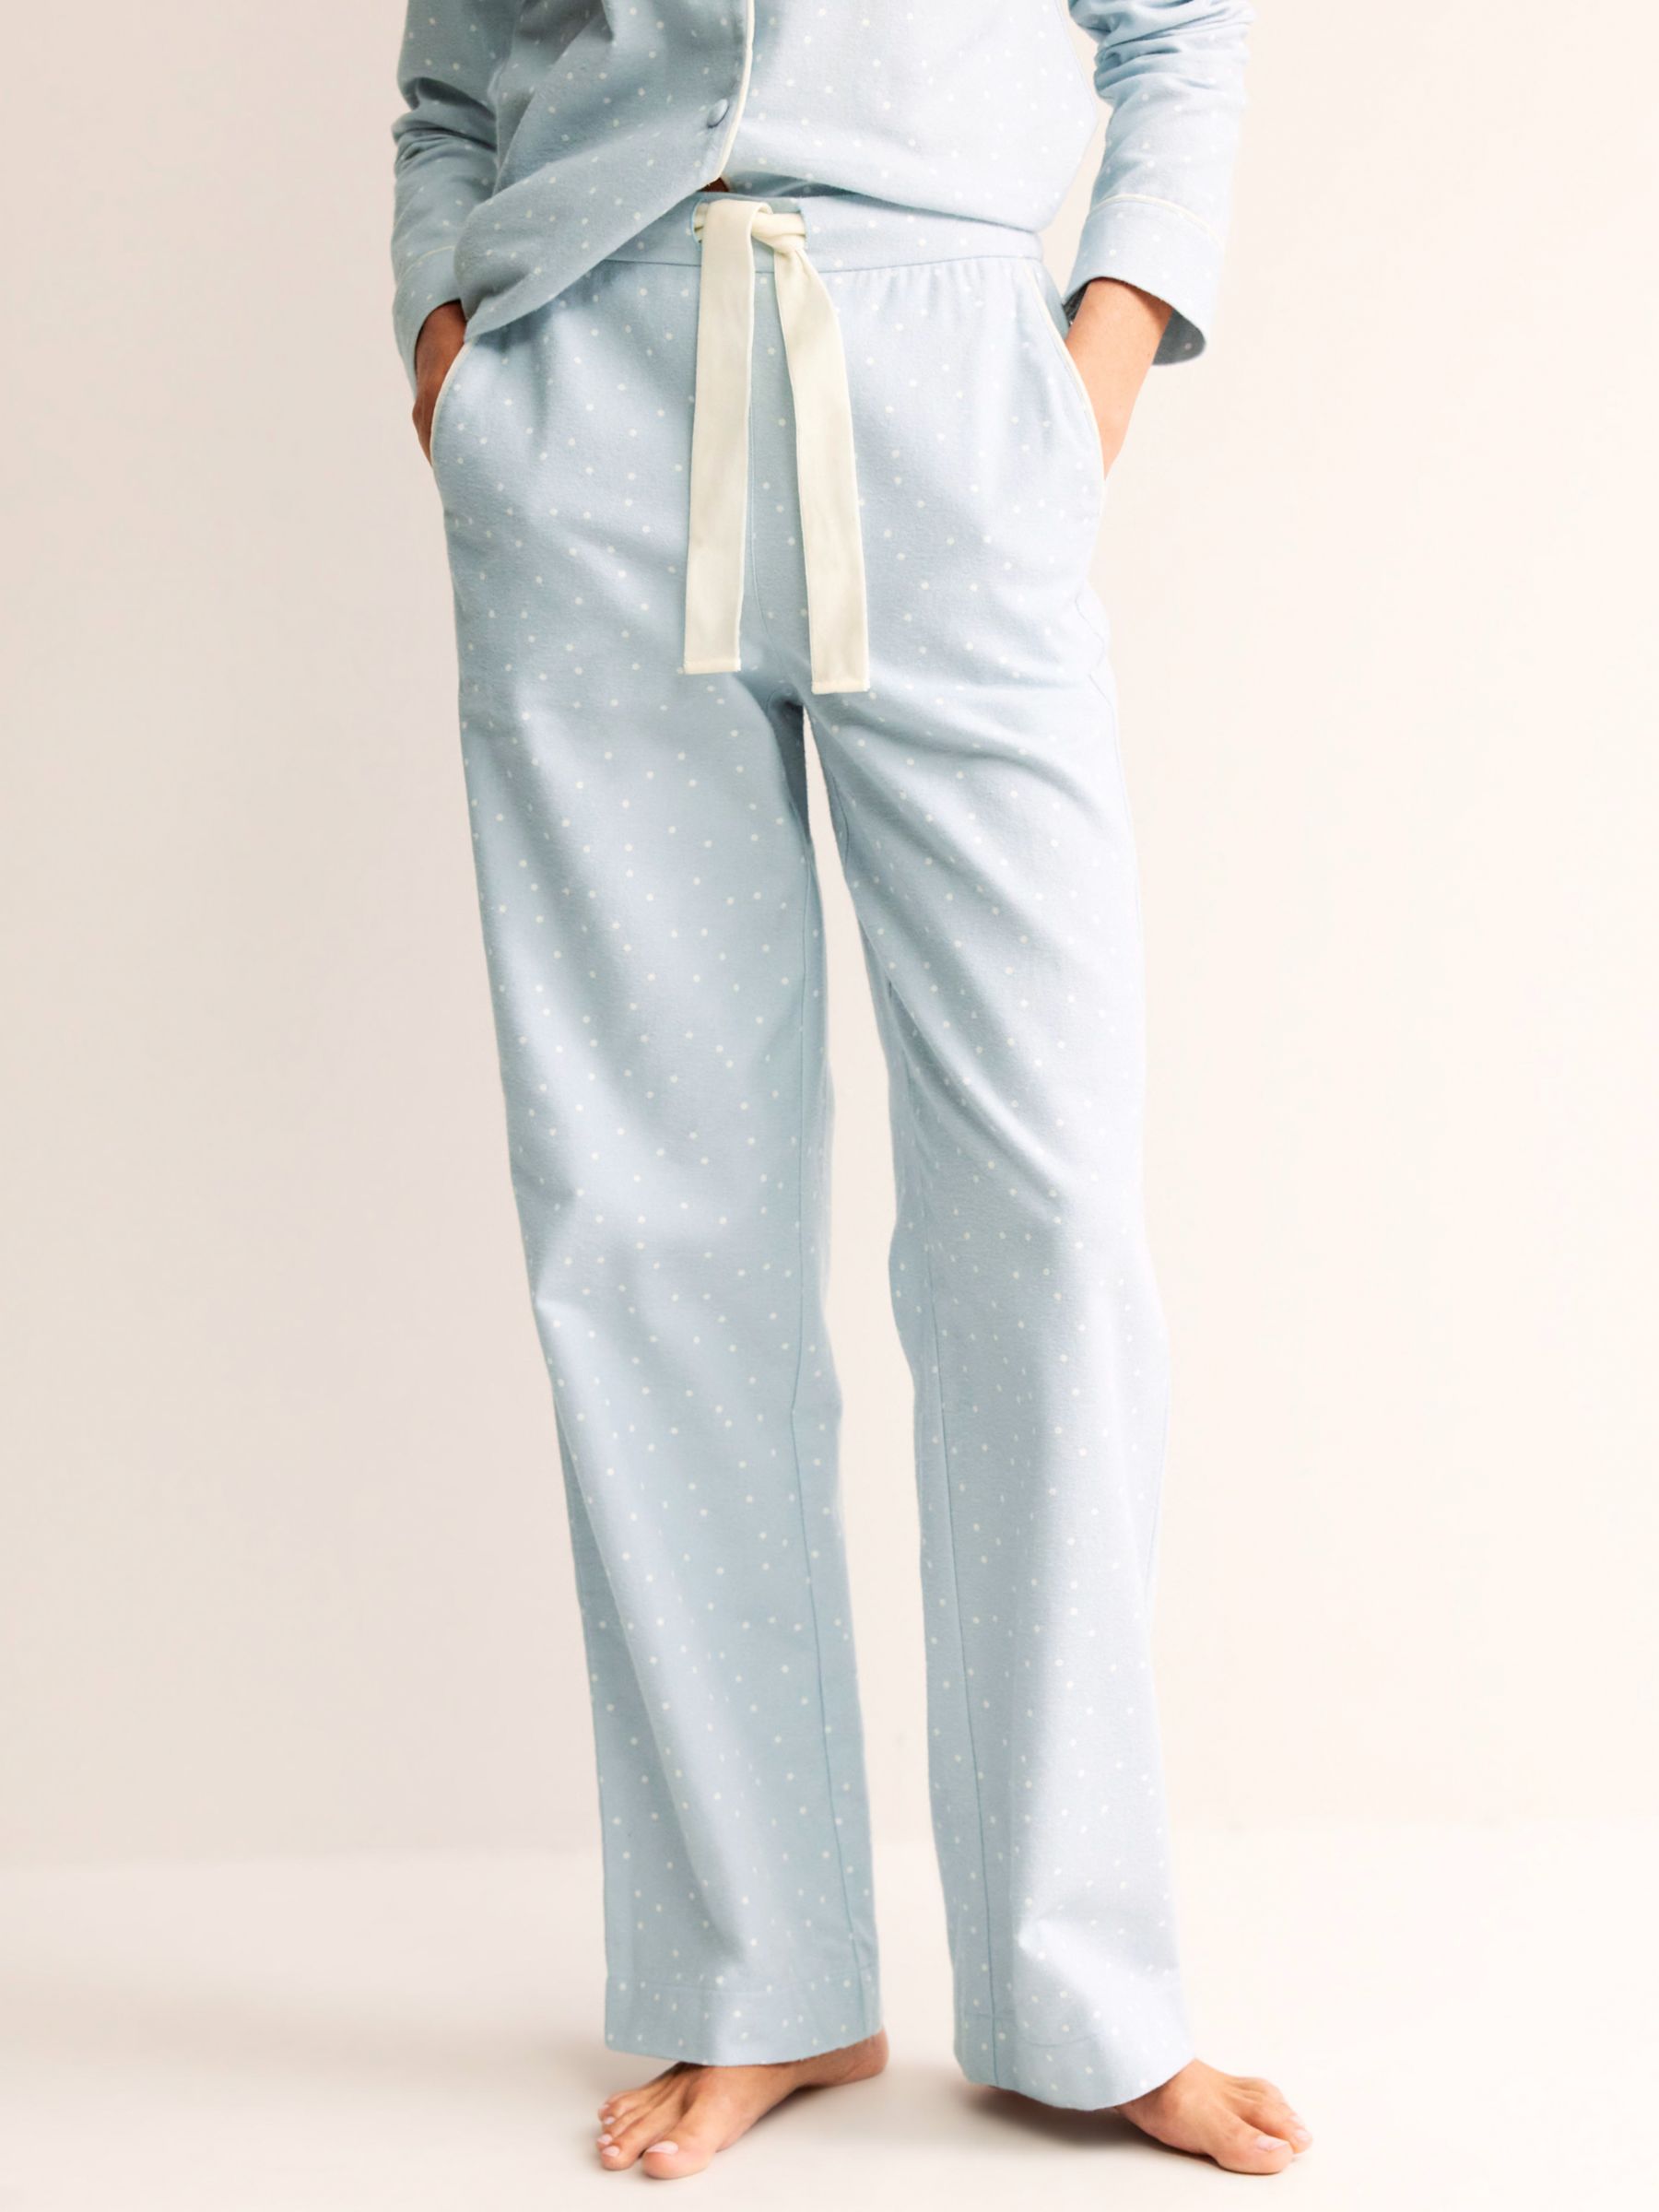 Long camping print 100% cotton pyjama bottoms, Pyjamas and Loungewear